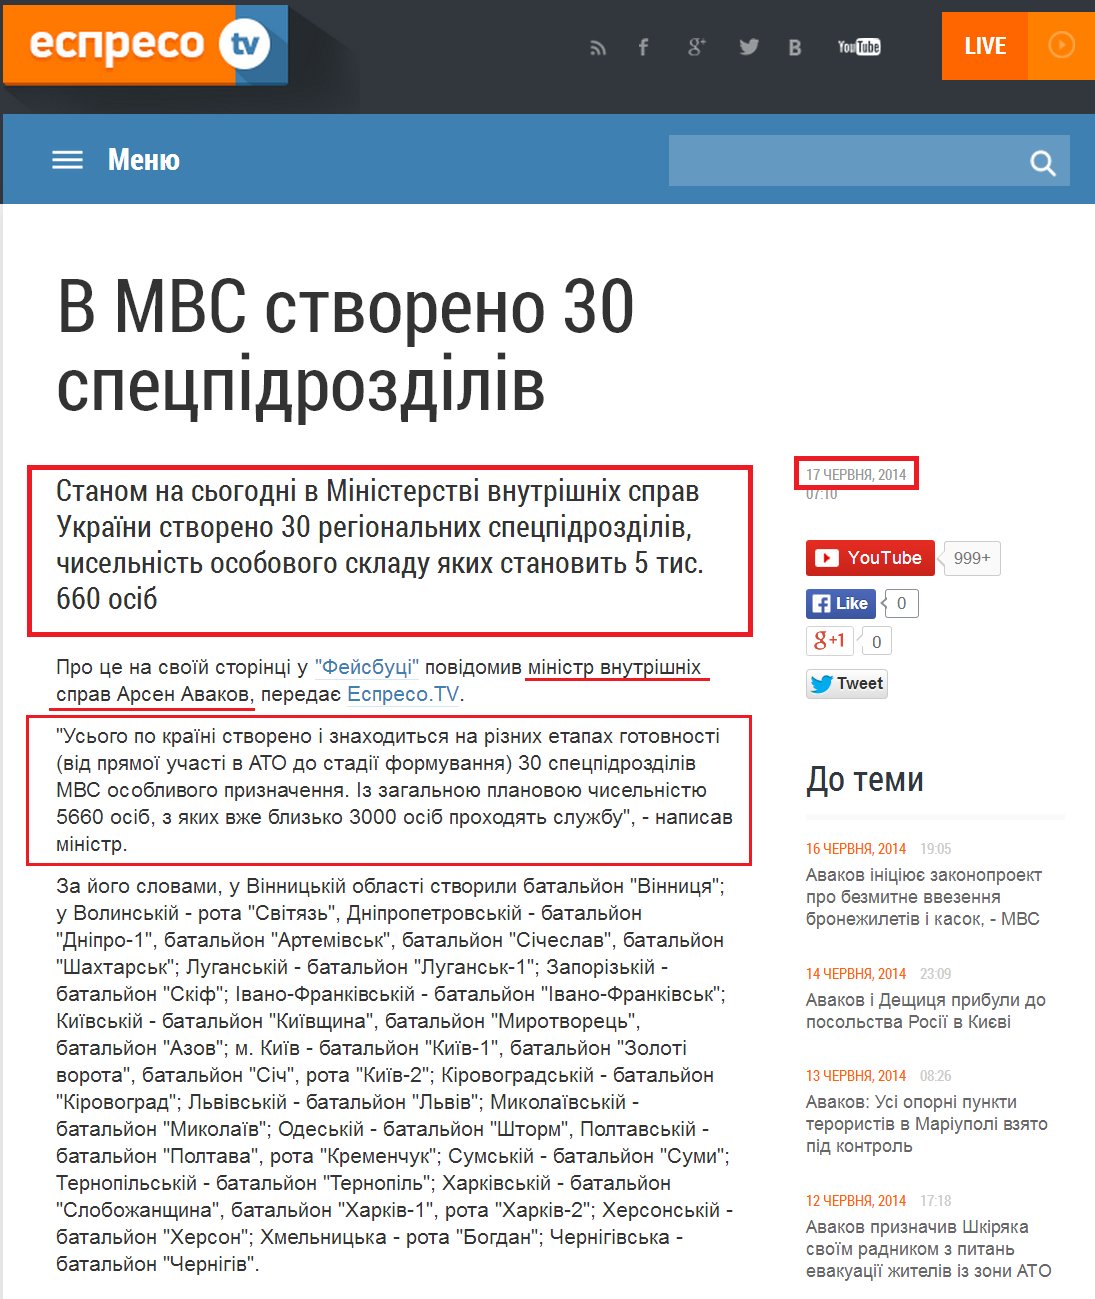 http://espreso.tv/news/2014/06/17/v_mvs_stvoreno_30_specpidrozdiliv_chyselnistyu_blyzko_6_tysyach_osib